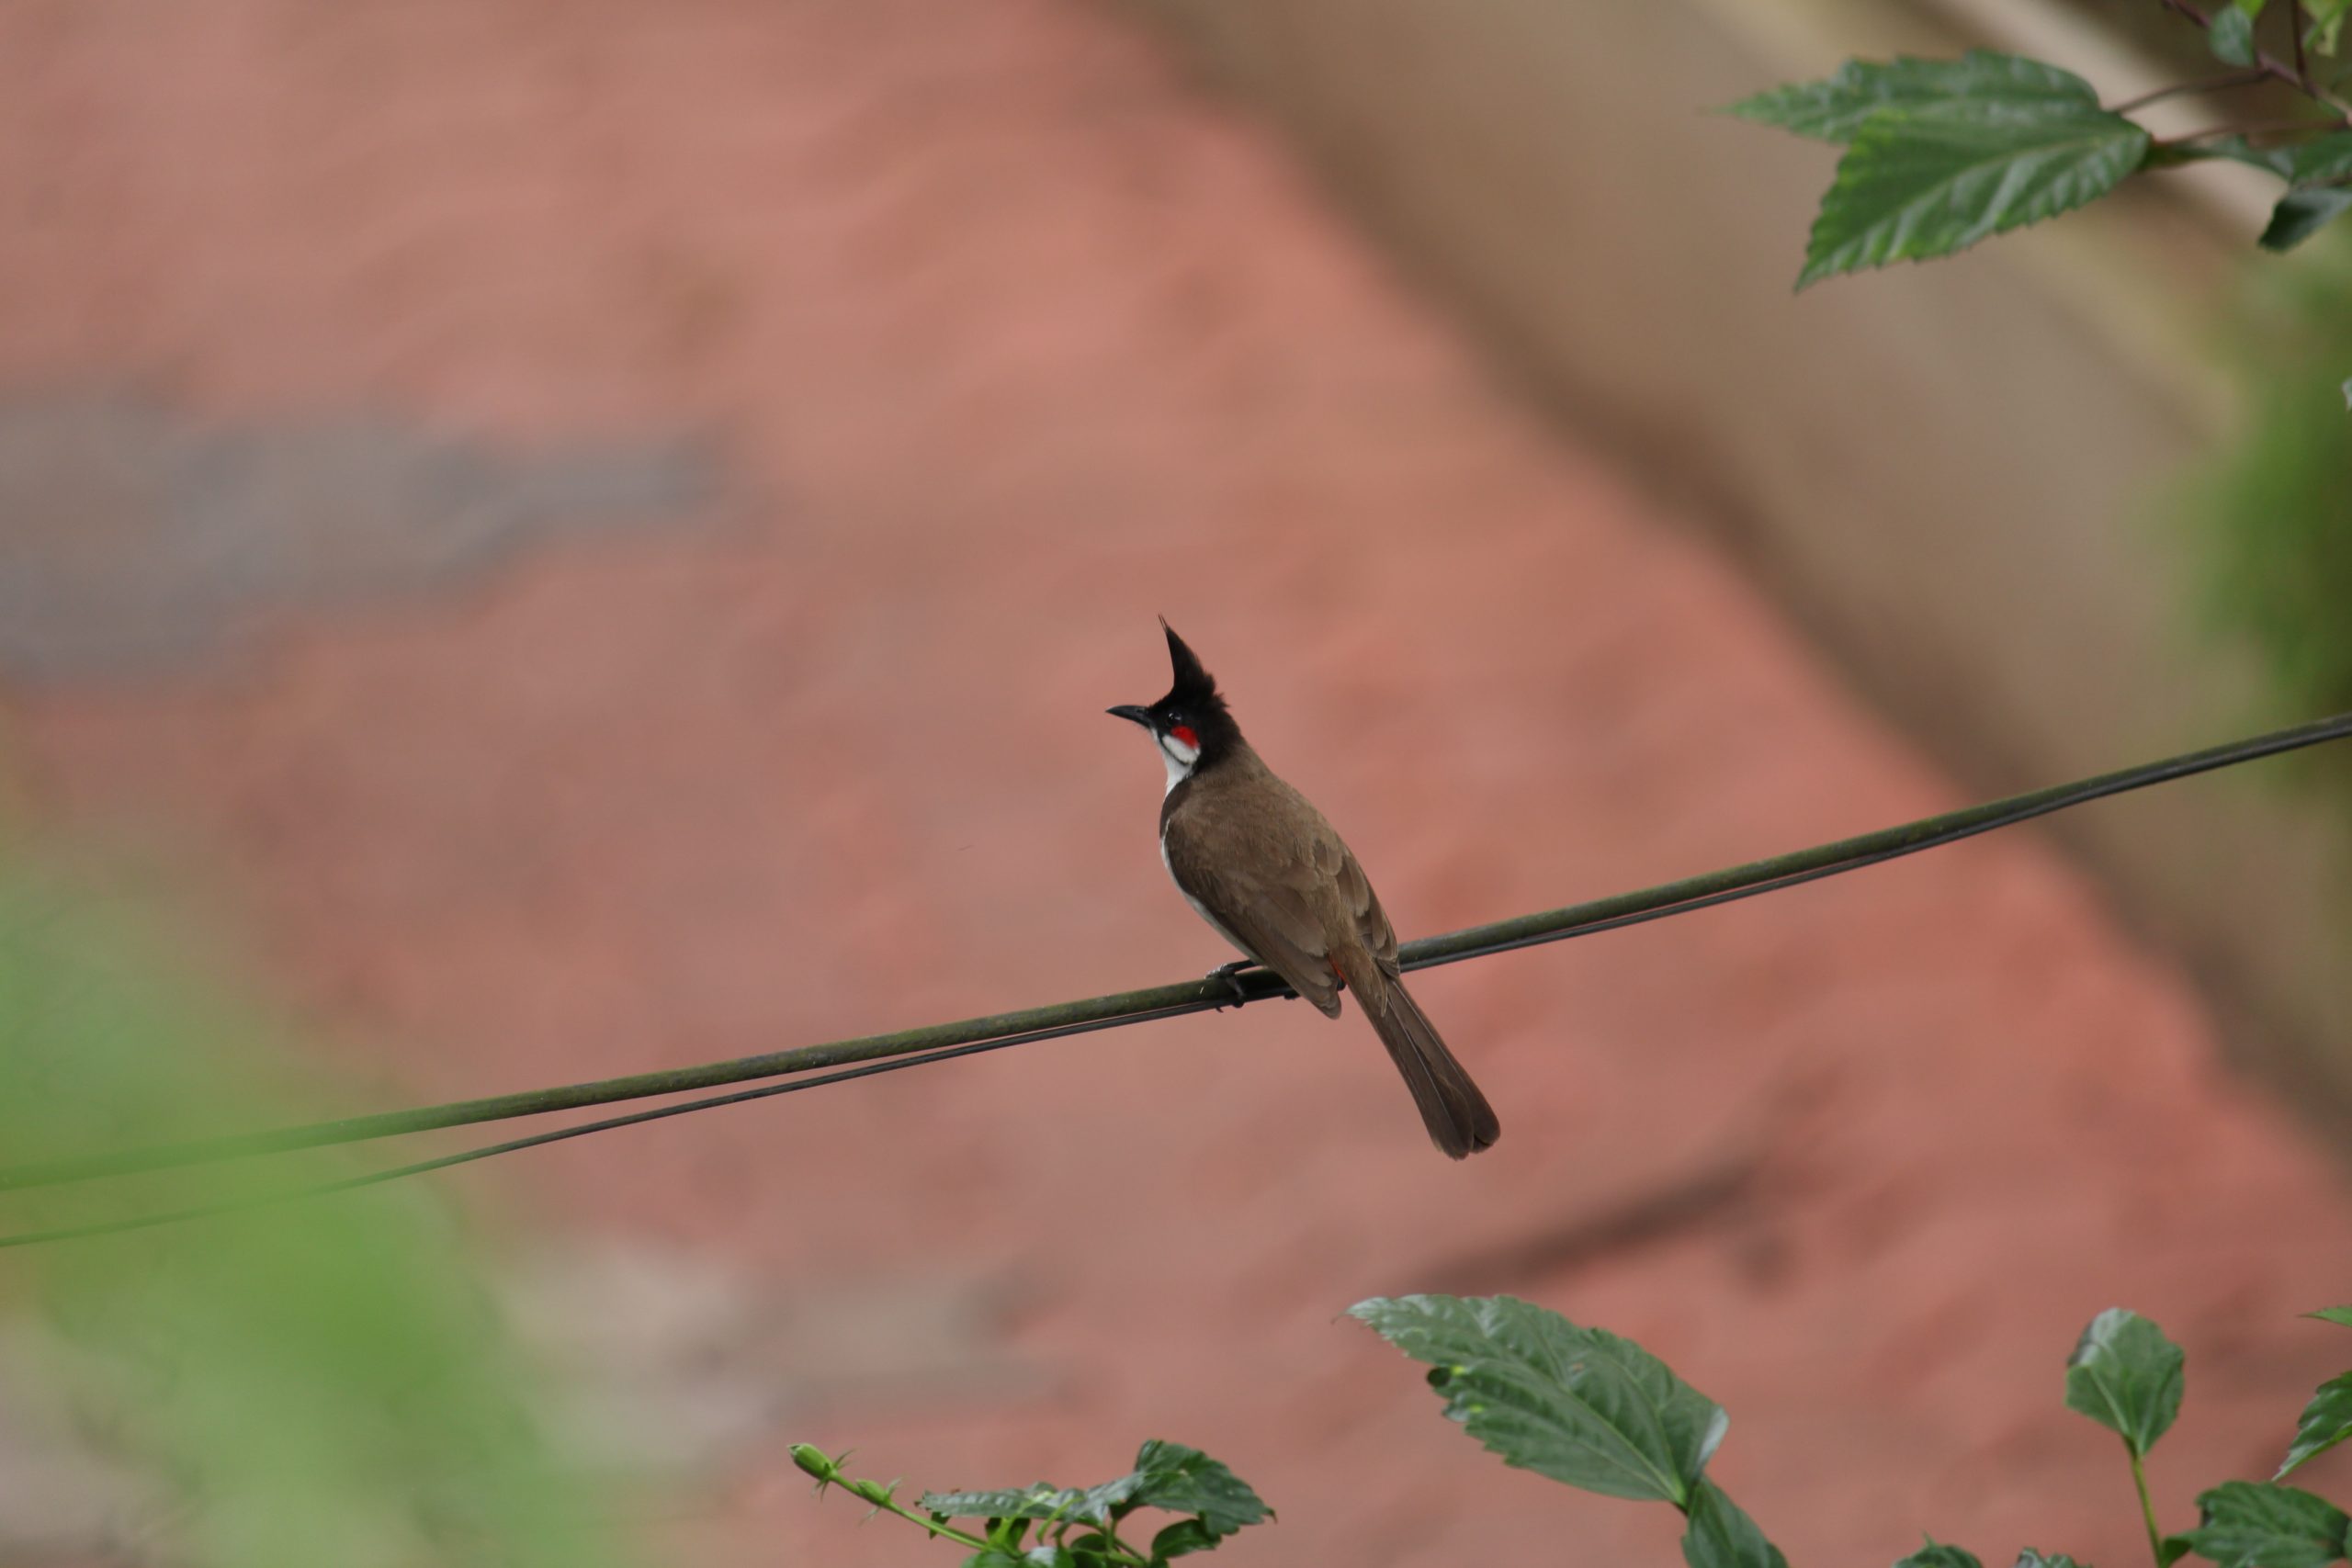 a bird sitting on wire